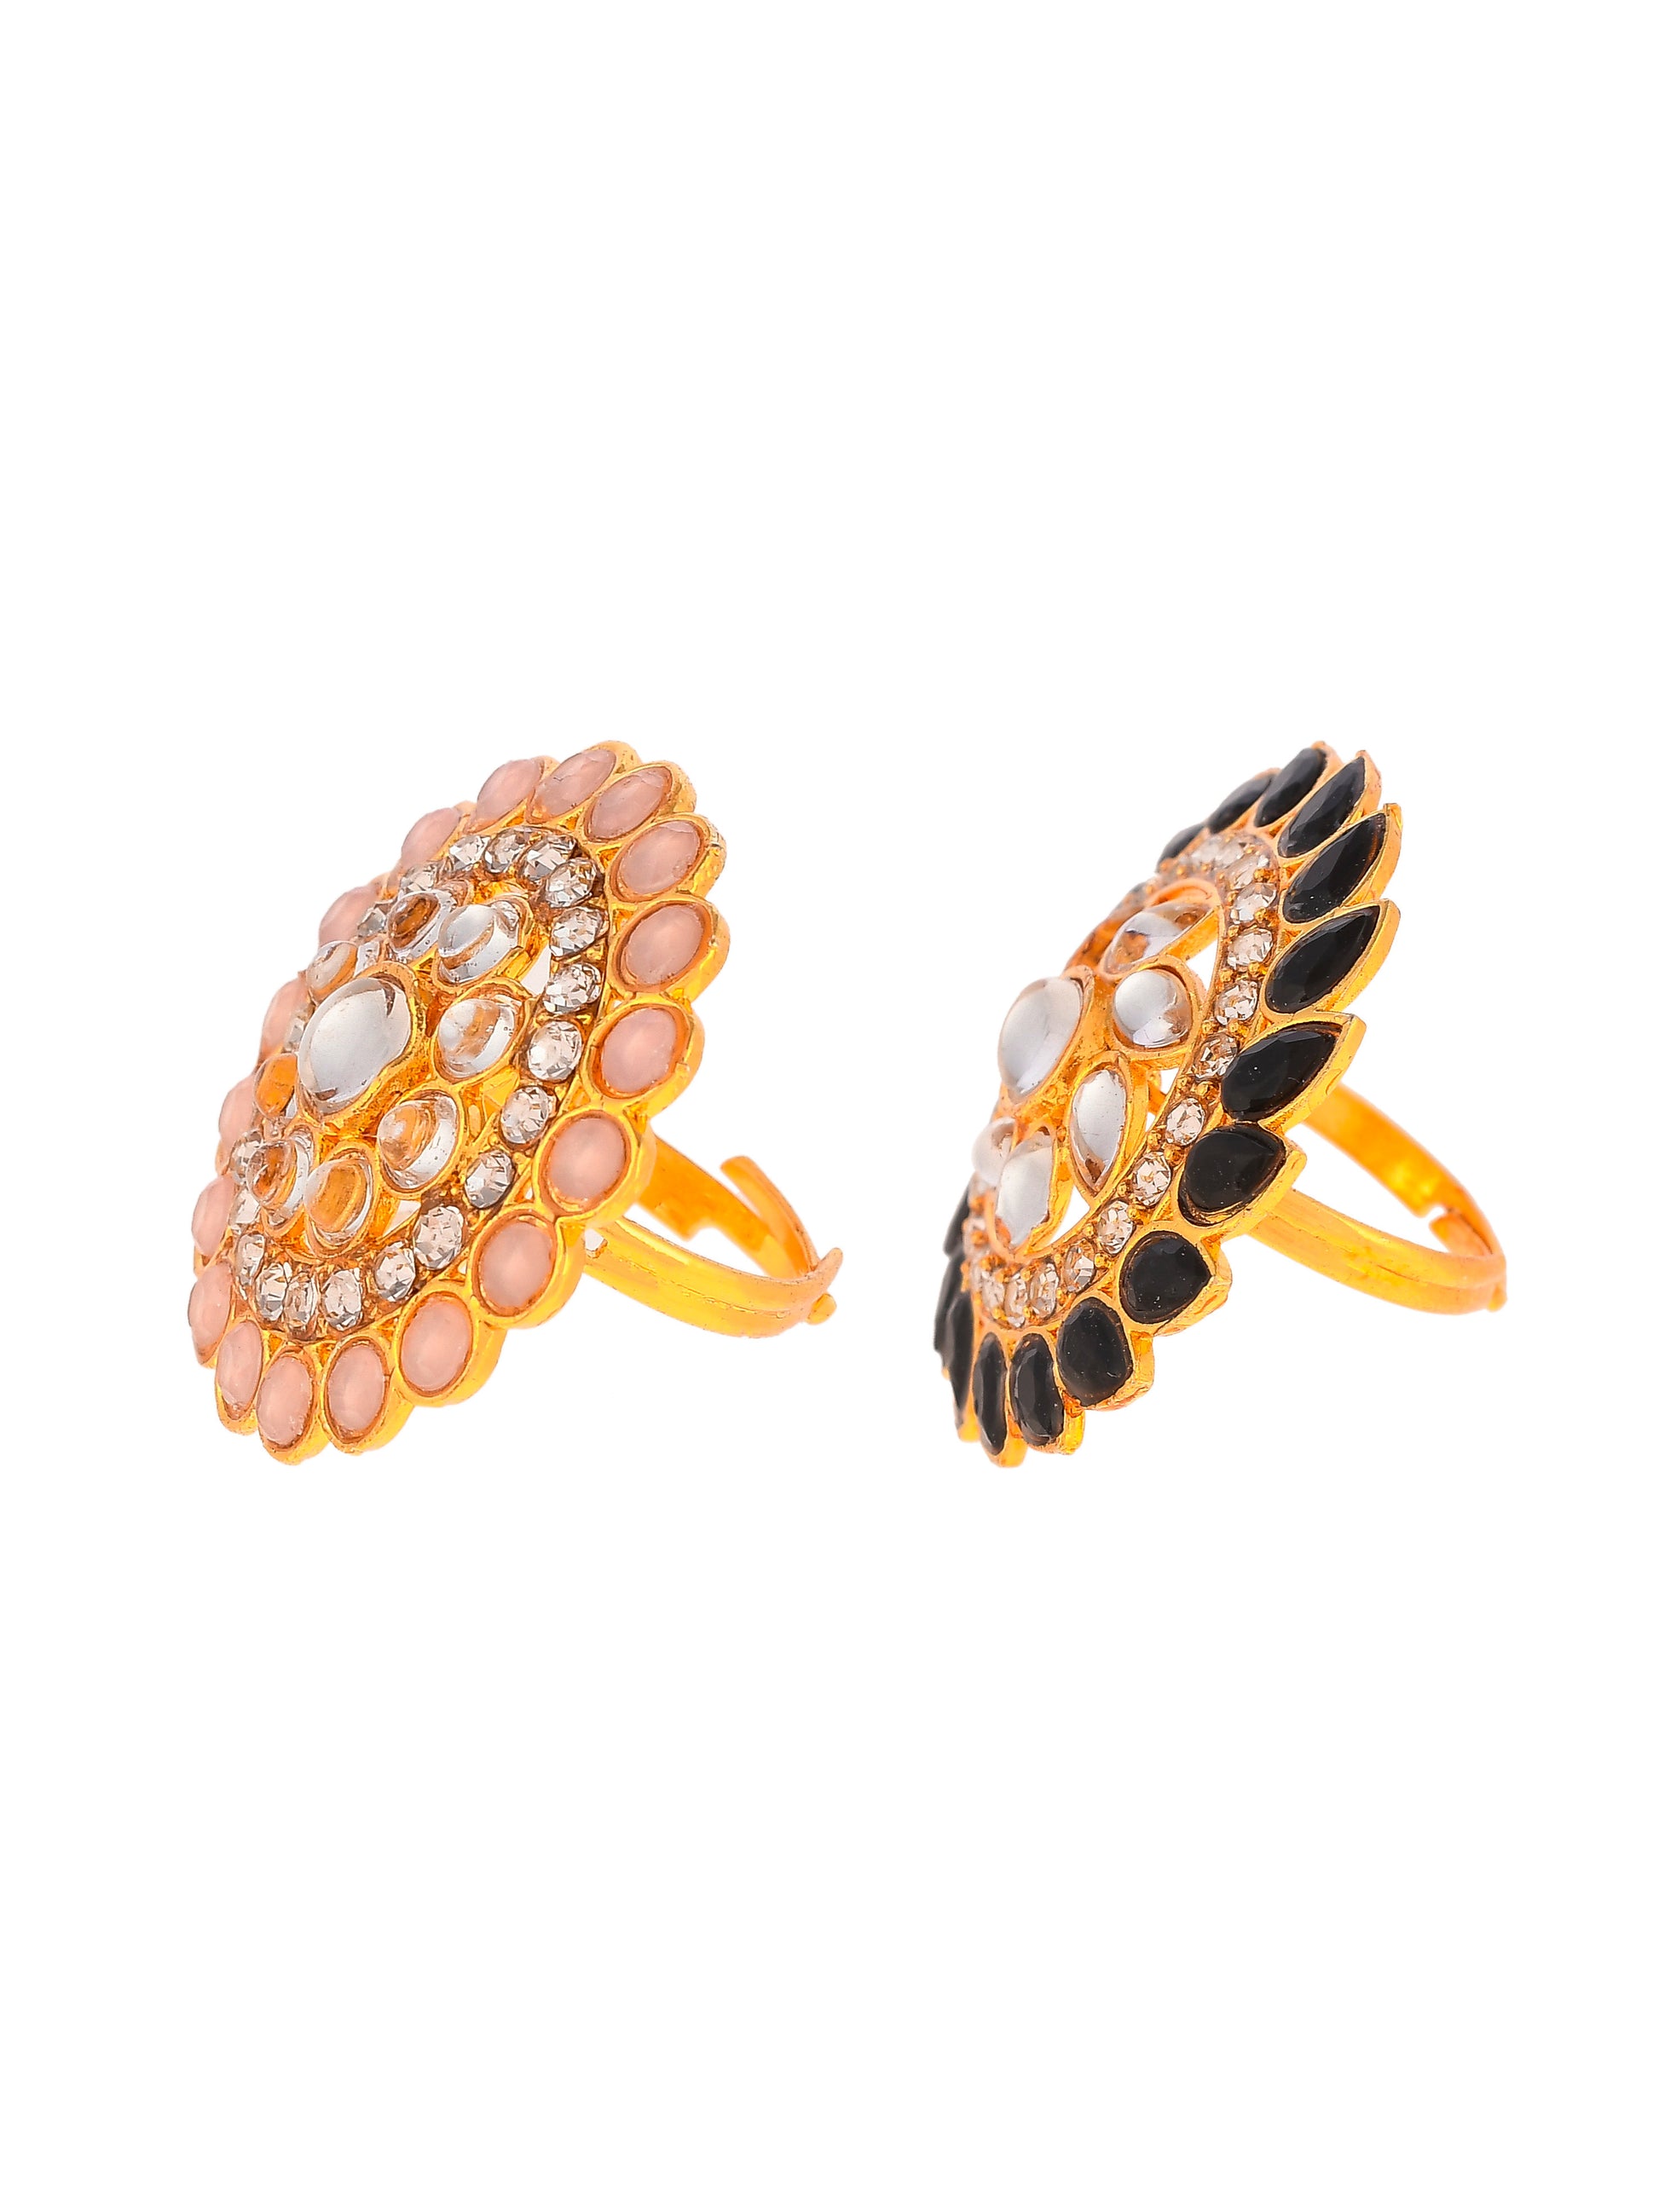 Set of 2 Gold Plated Kundan Adjustable Floral Ethnic Finger Ring